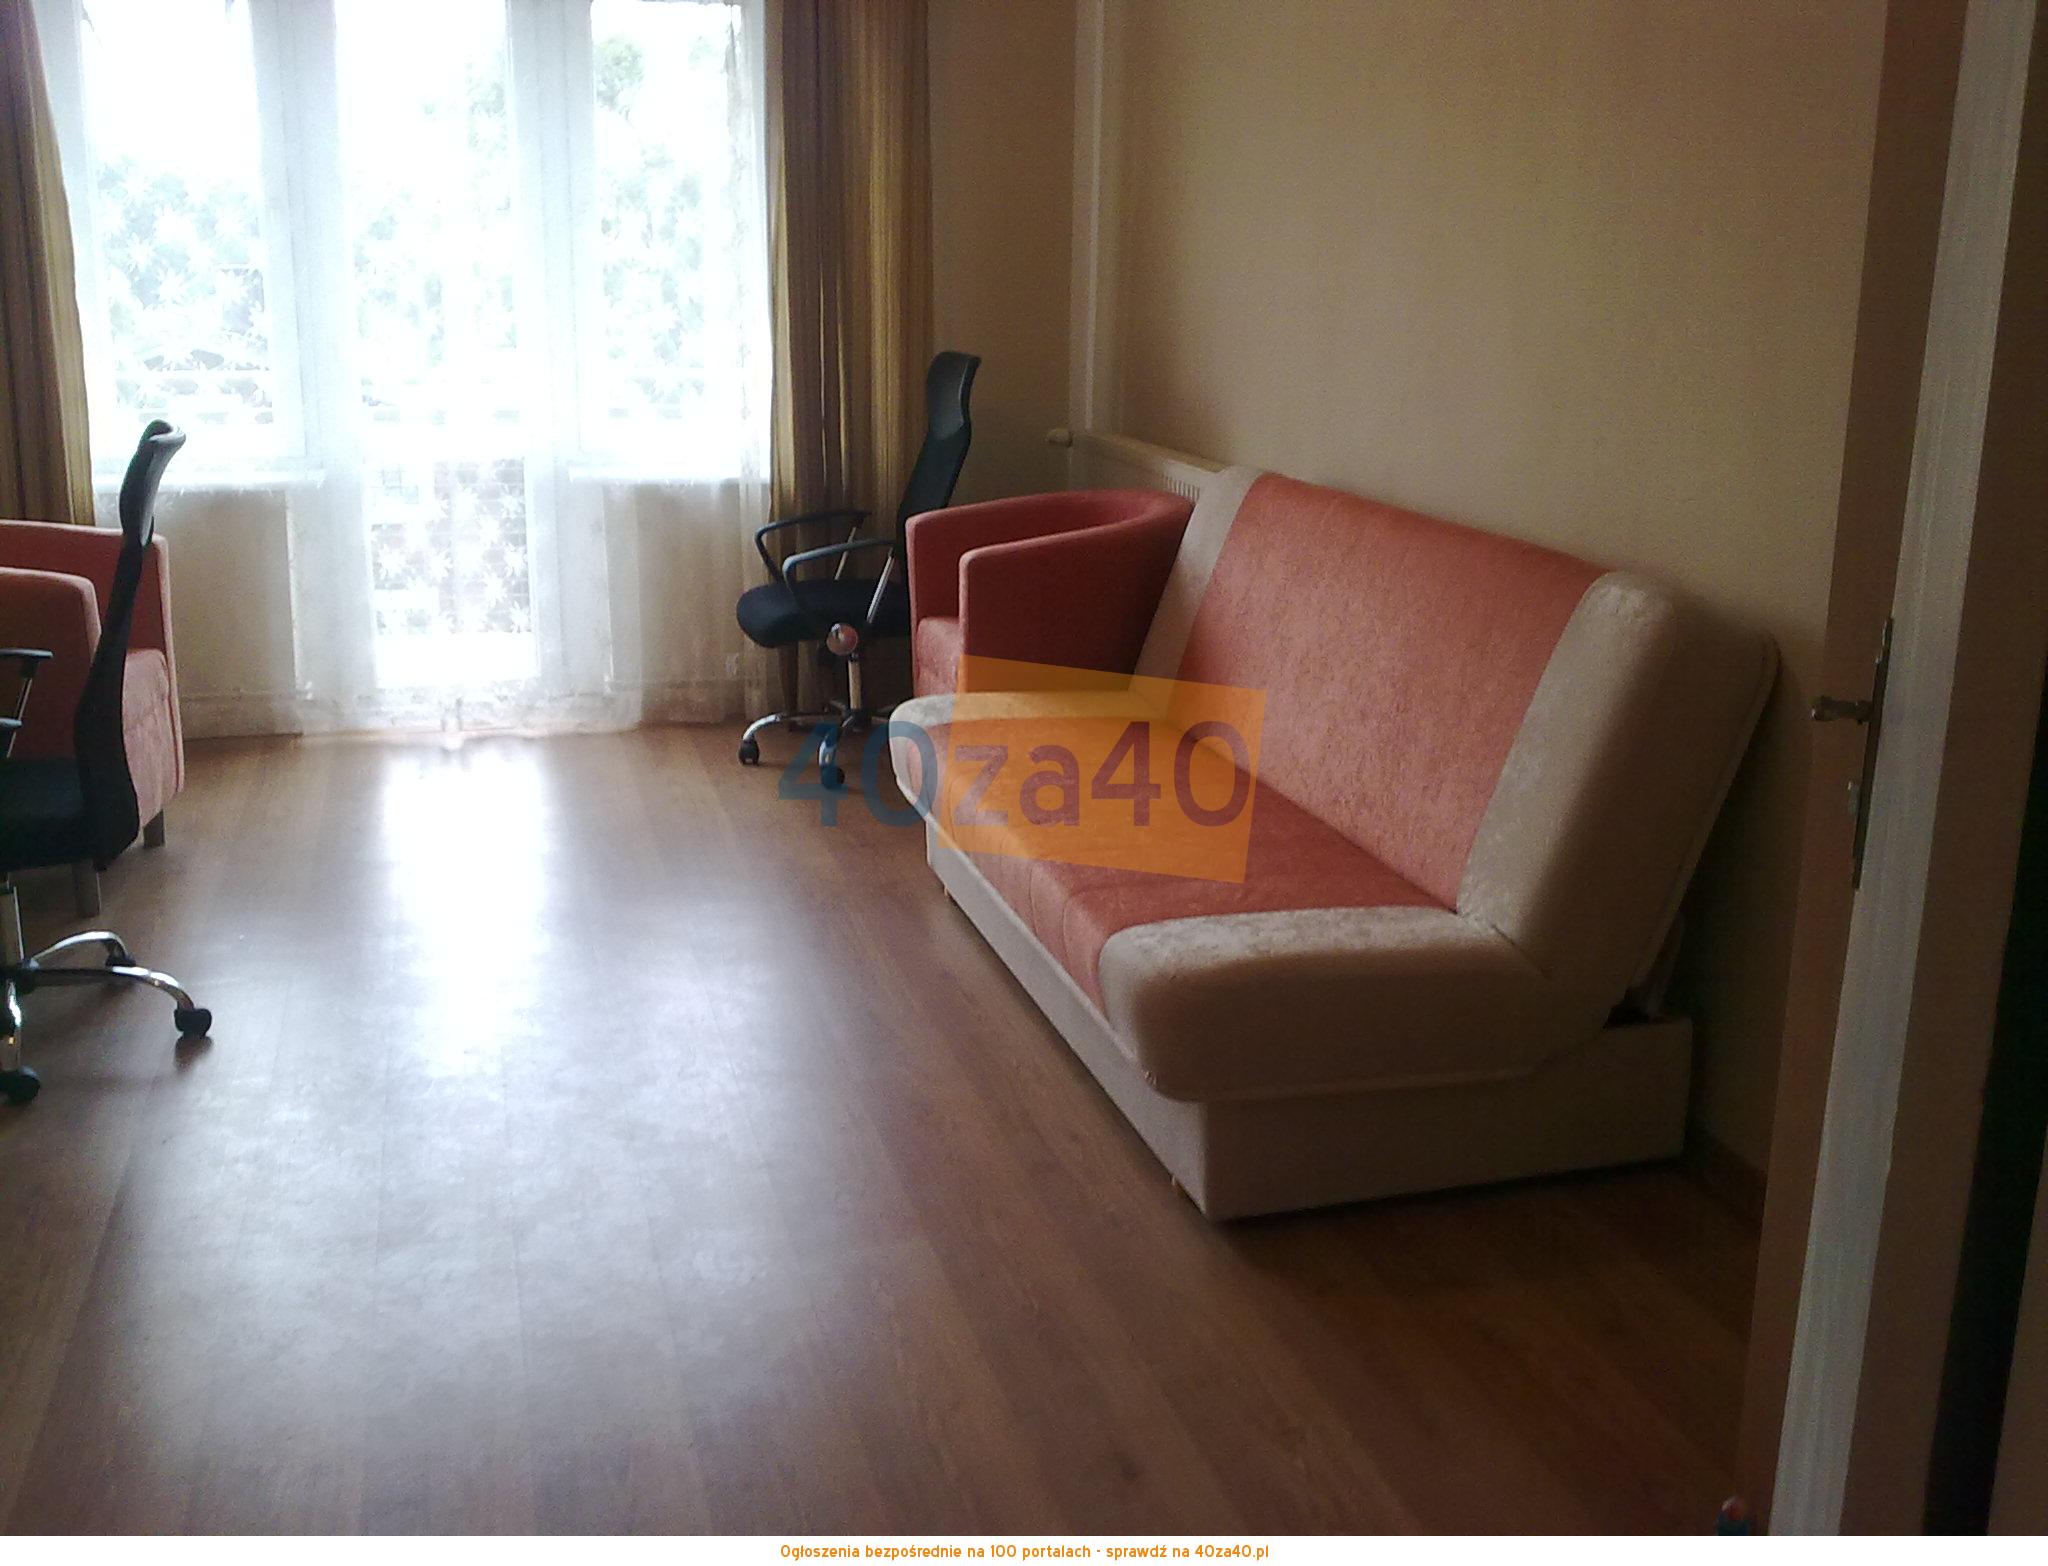 Mieszkanie do wynajęcia, pokoje: 1, cena: 600,00 PLN, Toruń, kontakt: 501391010